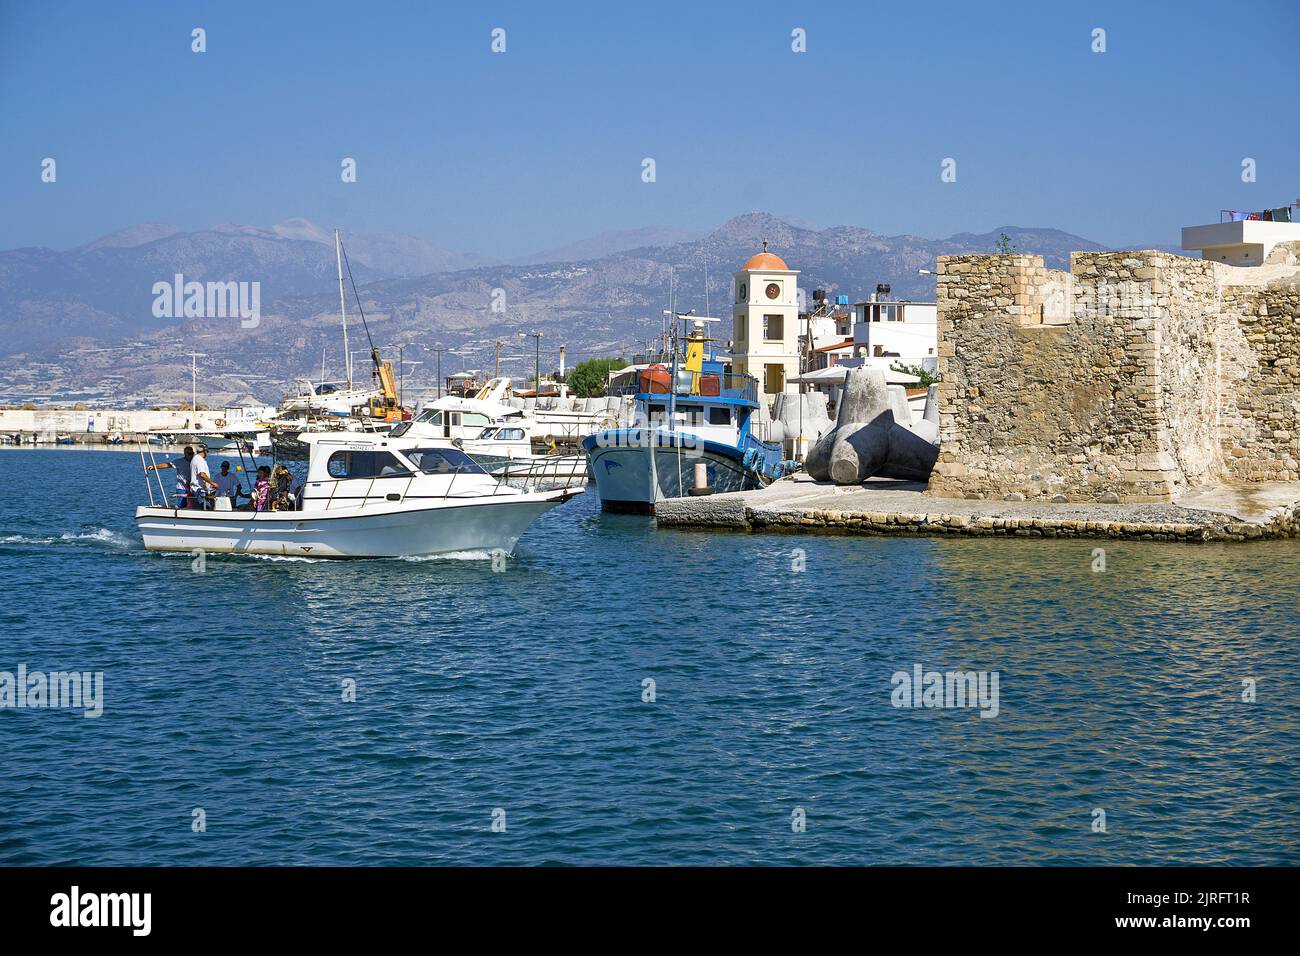 Barcos de pesca en el puerto de Ierapetra, antigua fortaleza veneciana, Ierapetra es la ciudad más meridional de Grecia, Creta, Grecia, Europa Foto de stock